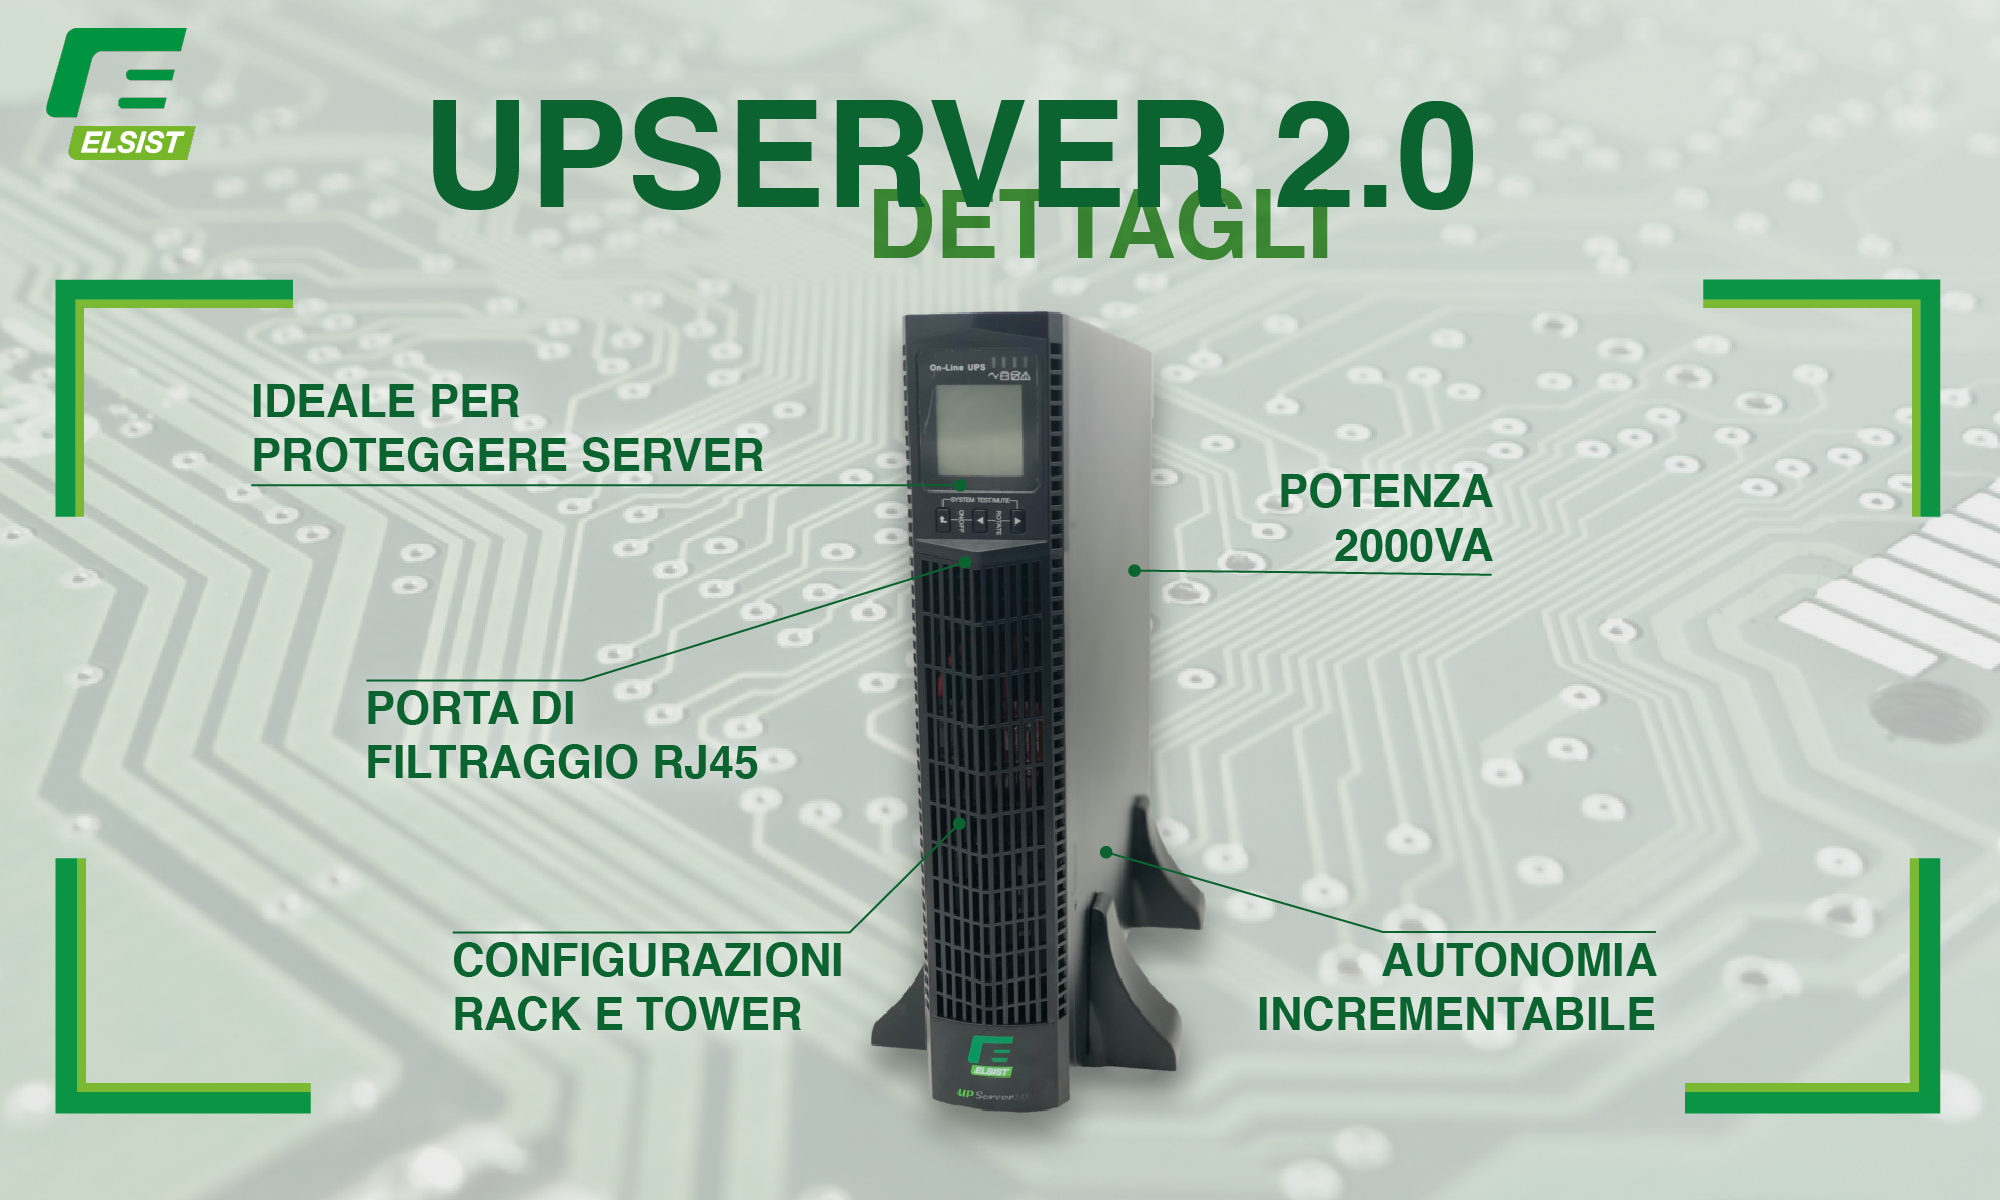 UPServer 2.0